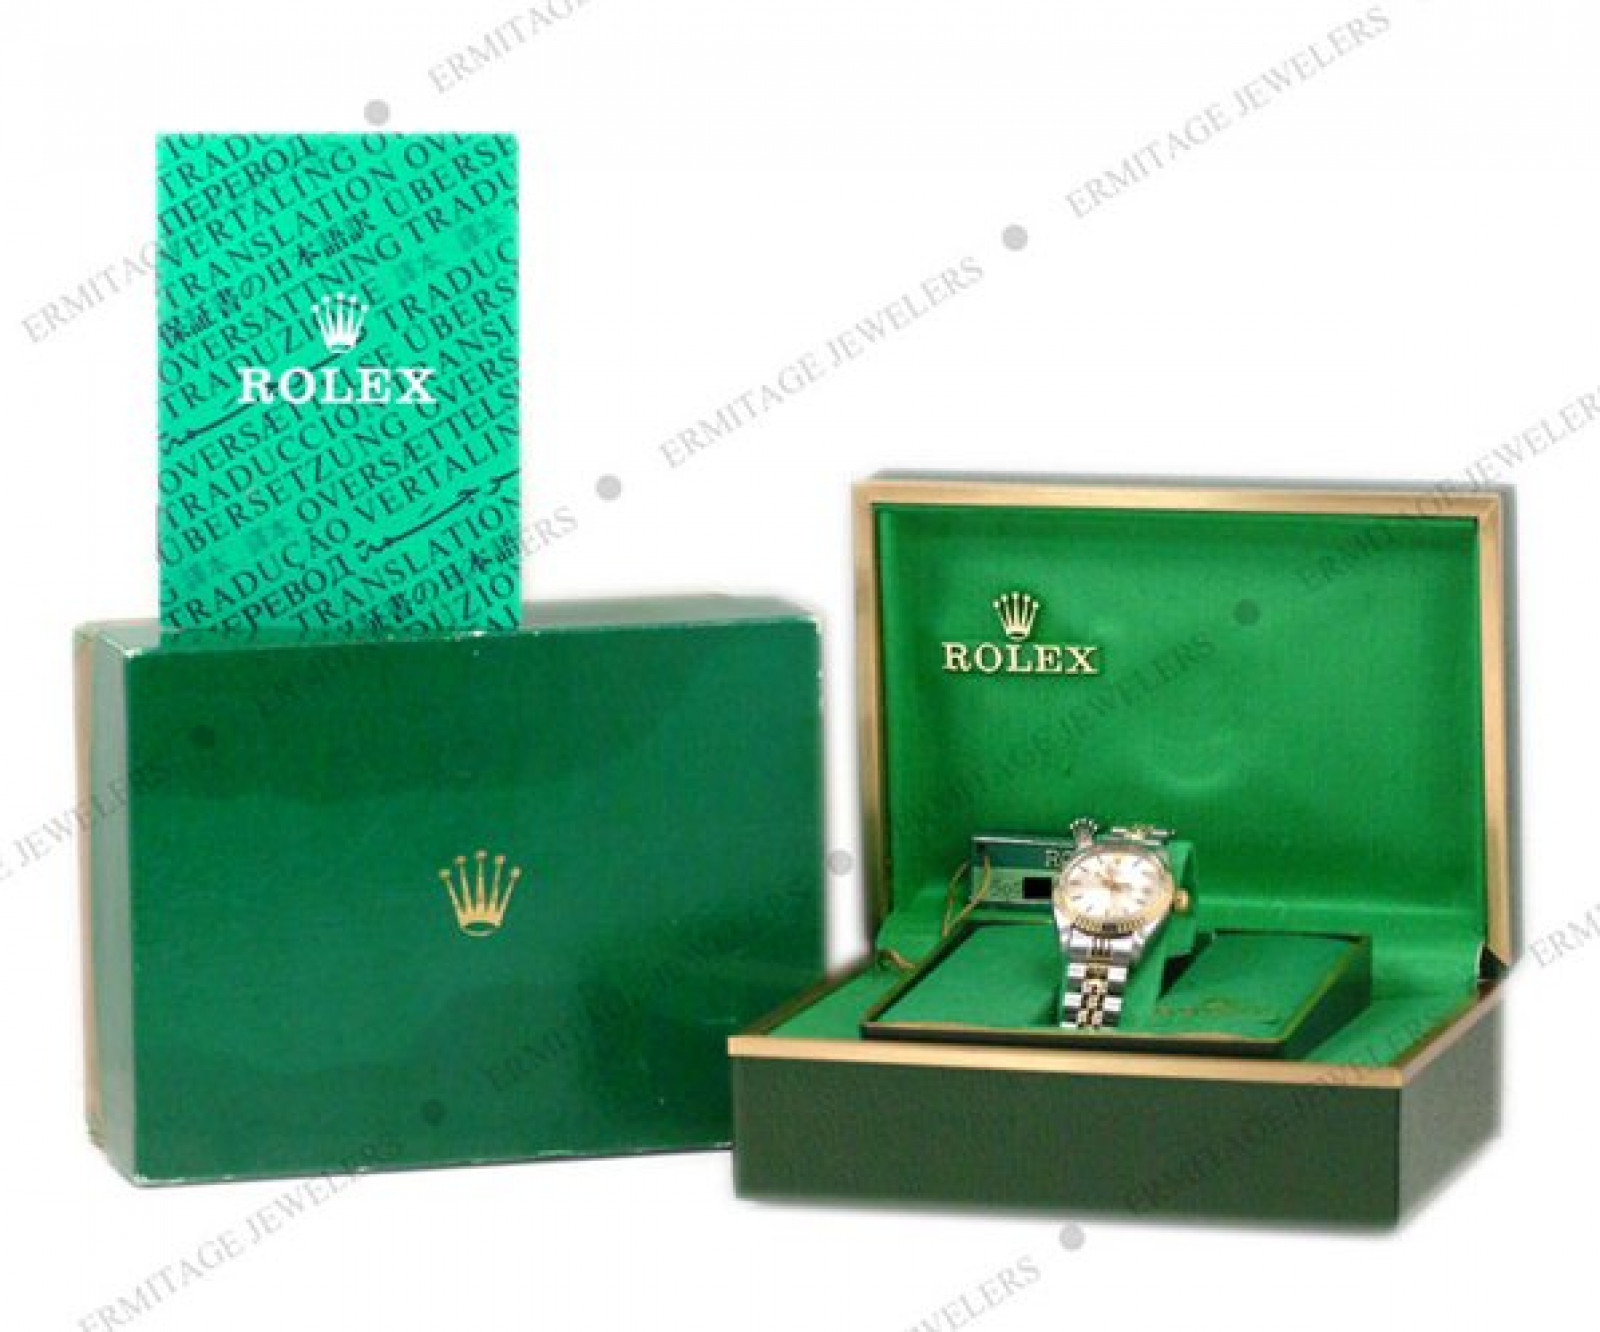 Vintage Rare Rolex Date 6917 Gold & Steel Year 1977